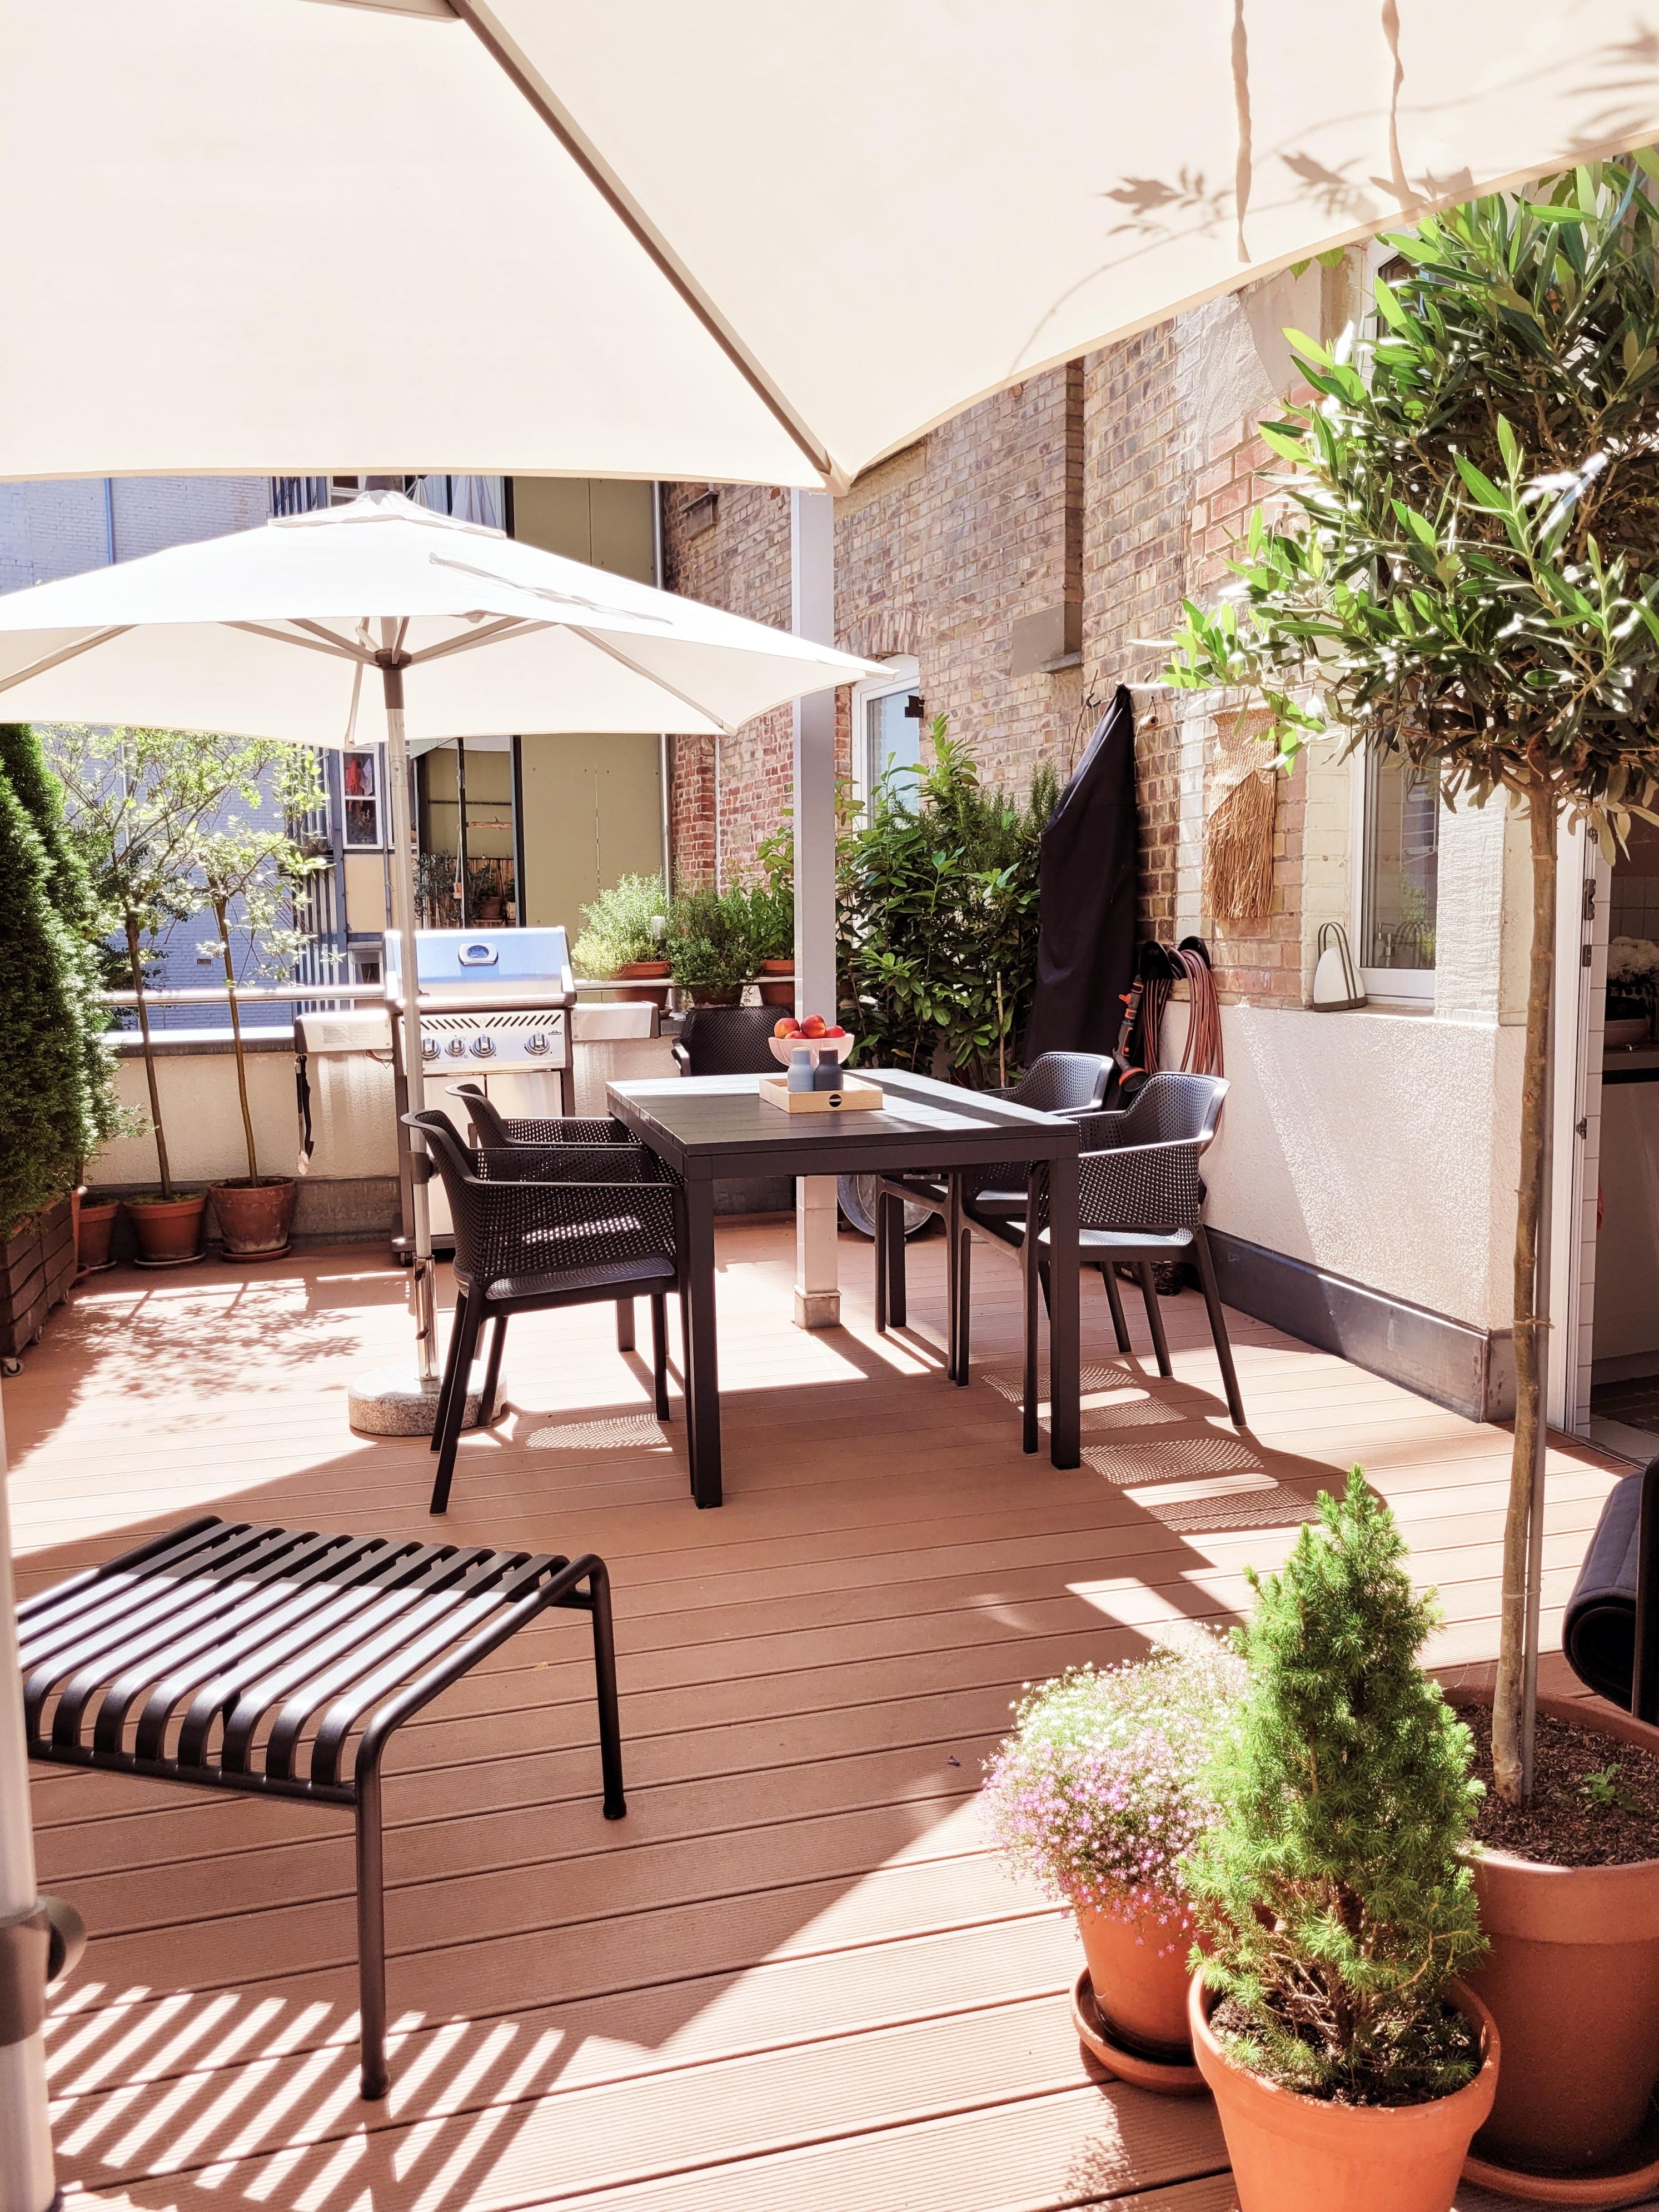 Welcome summer!
#Terrasse 
#balkony 
#Altbau 
#Garten 
#Esstisch 
#hay
#nardi
#Summer
#Pflanzen 
